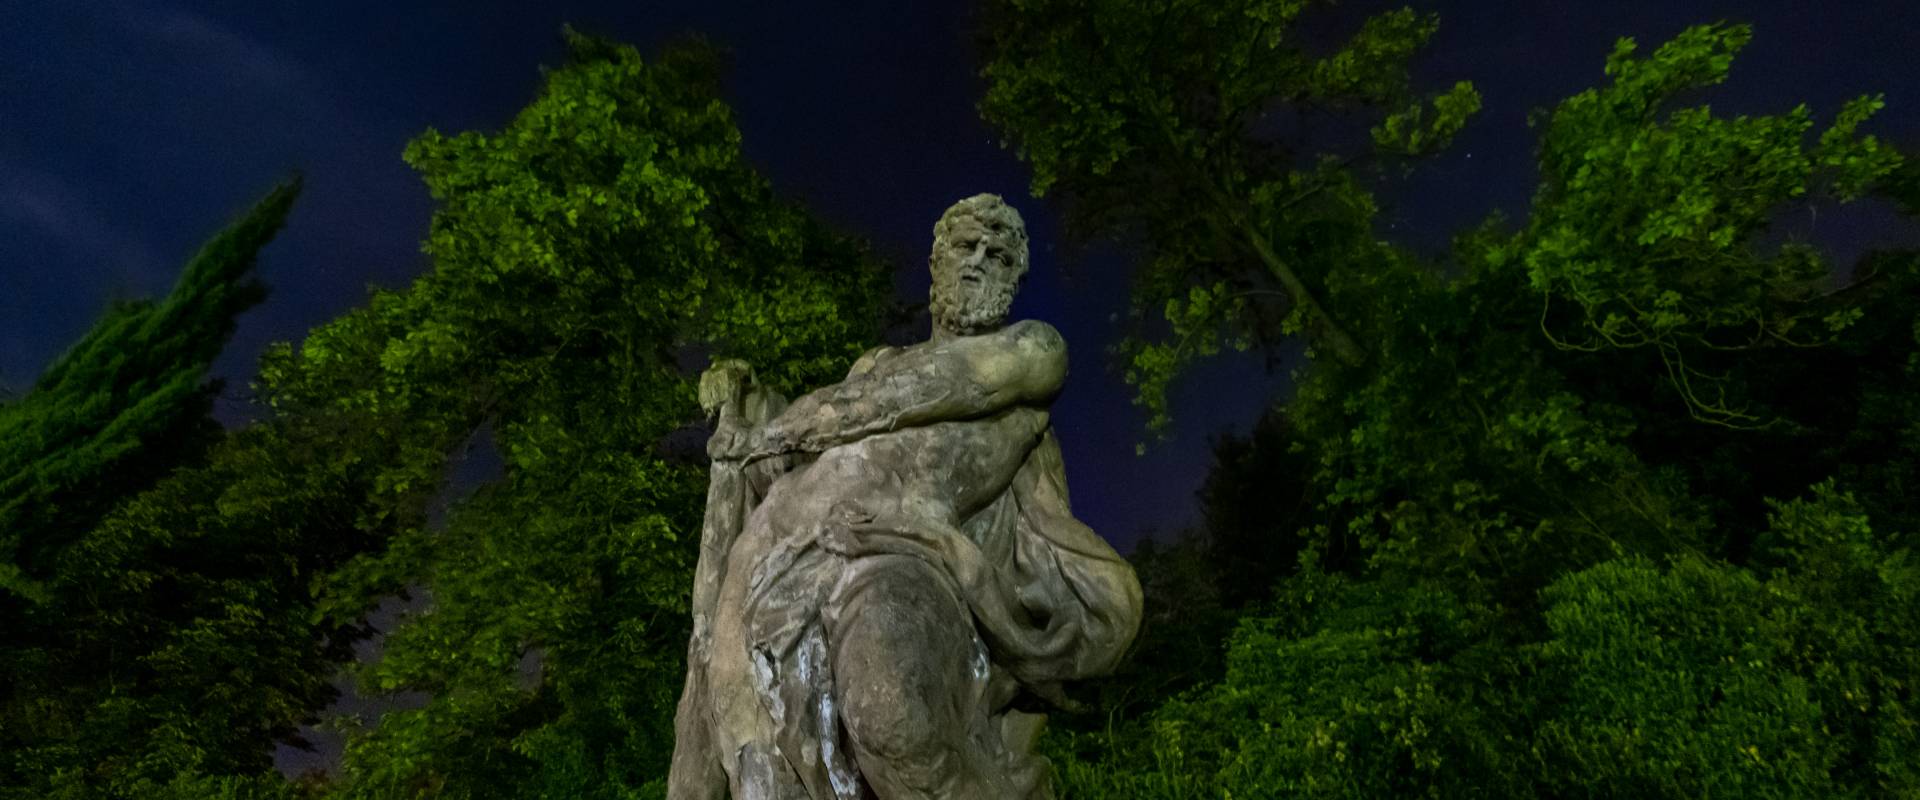 Statua di Ercole in notturna photo by Ugeorge